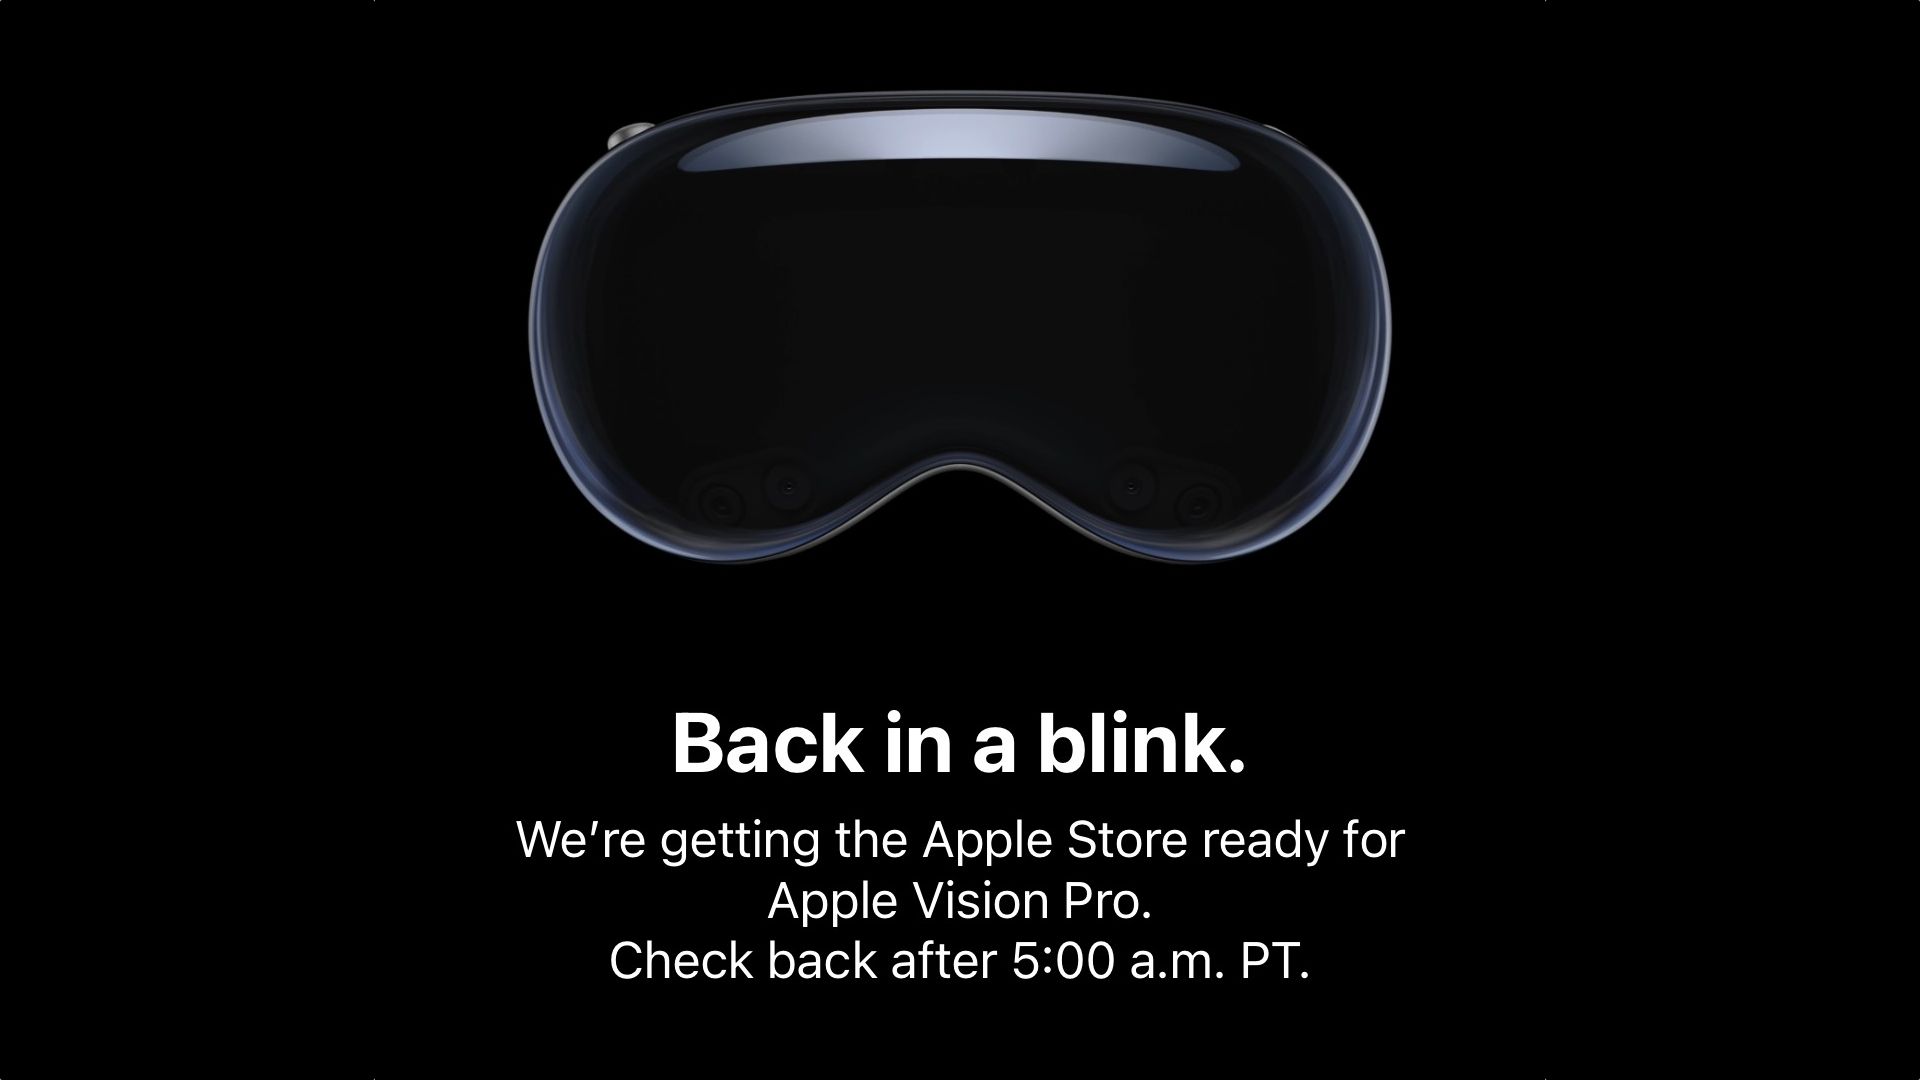 De Apple Store heeft bijna geen pre-orders meer voor de Vision Pro-hoofdtelefoon